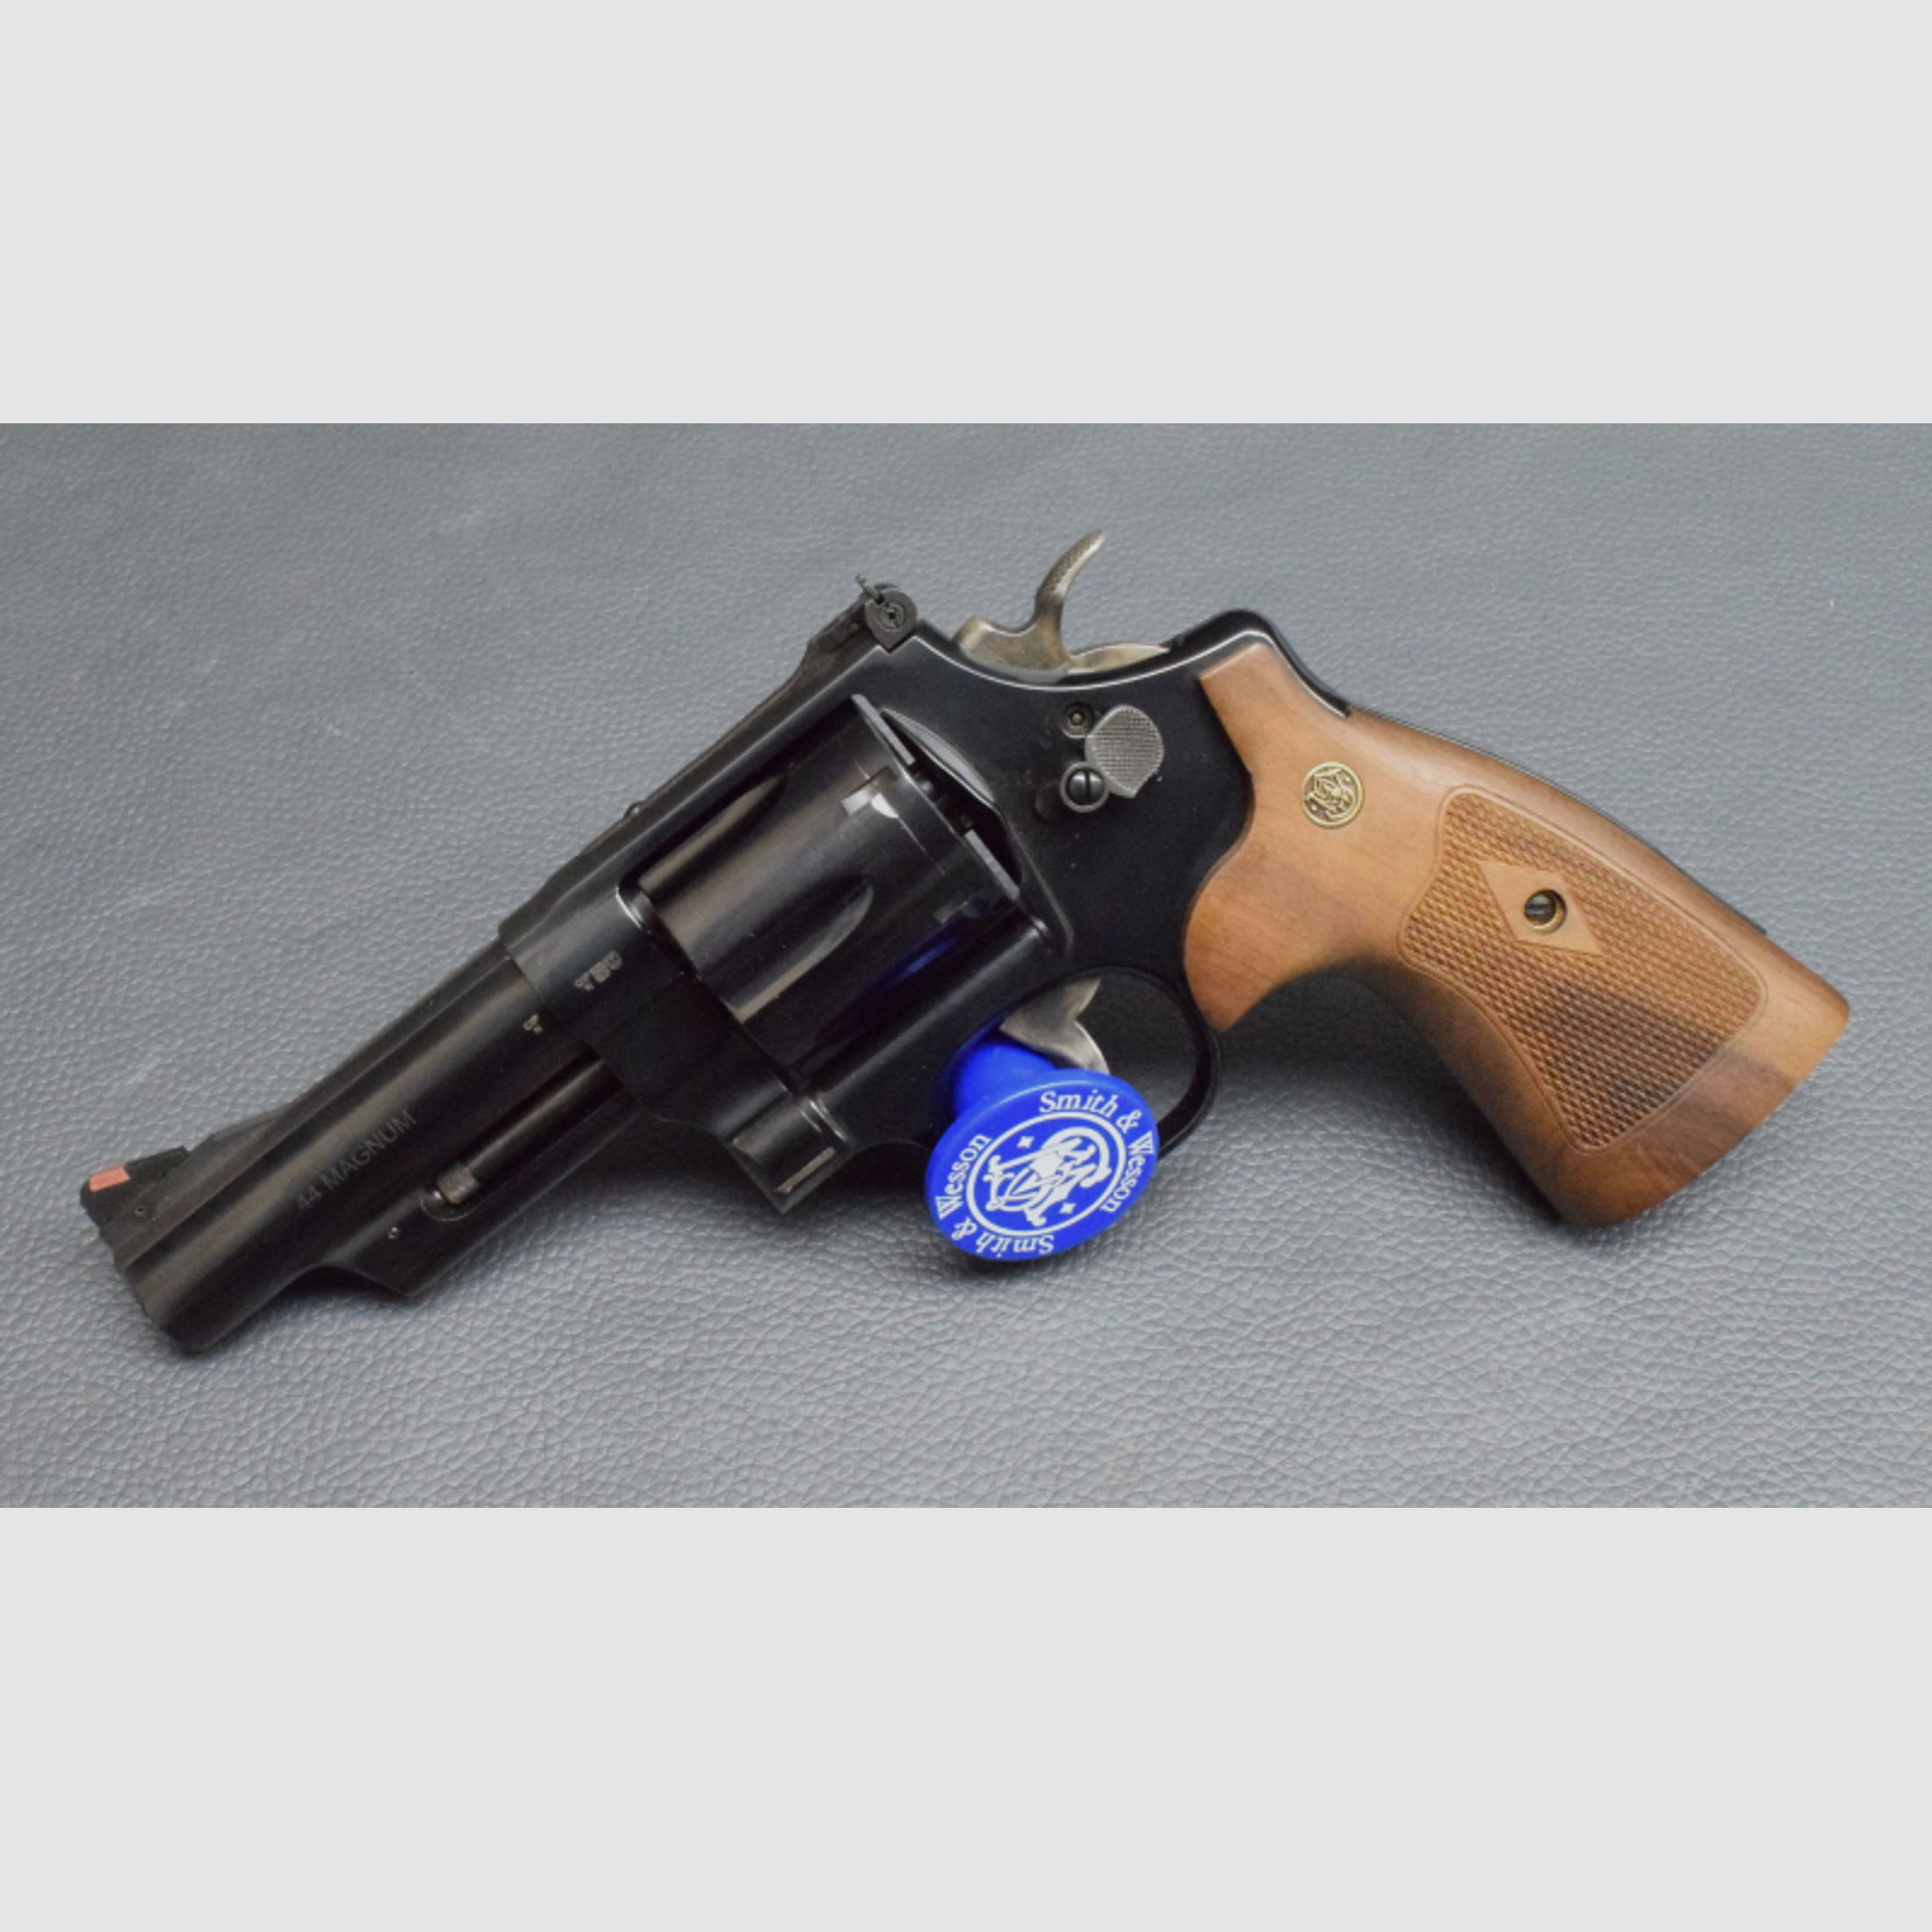 Smith & Wesson Modell 29 Classic, 4", Kal. 44 Magnum,Neu aus Geschäftsauflösung